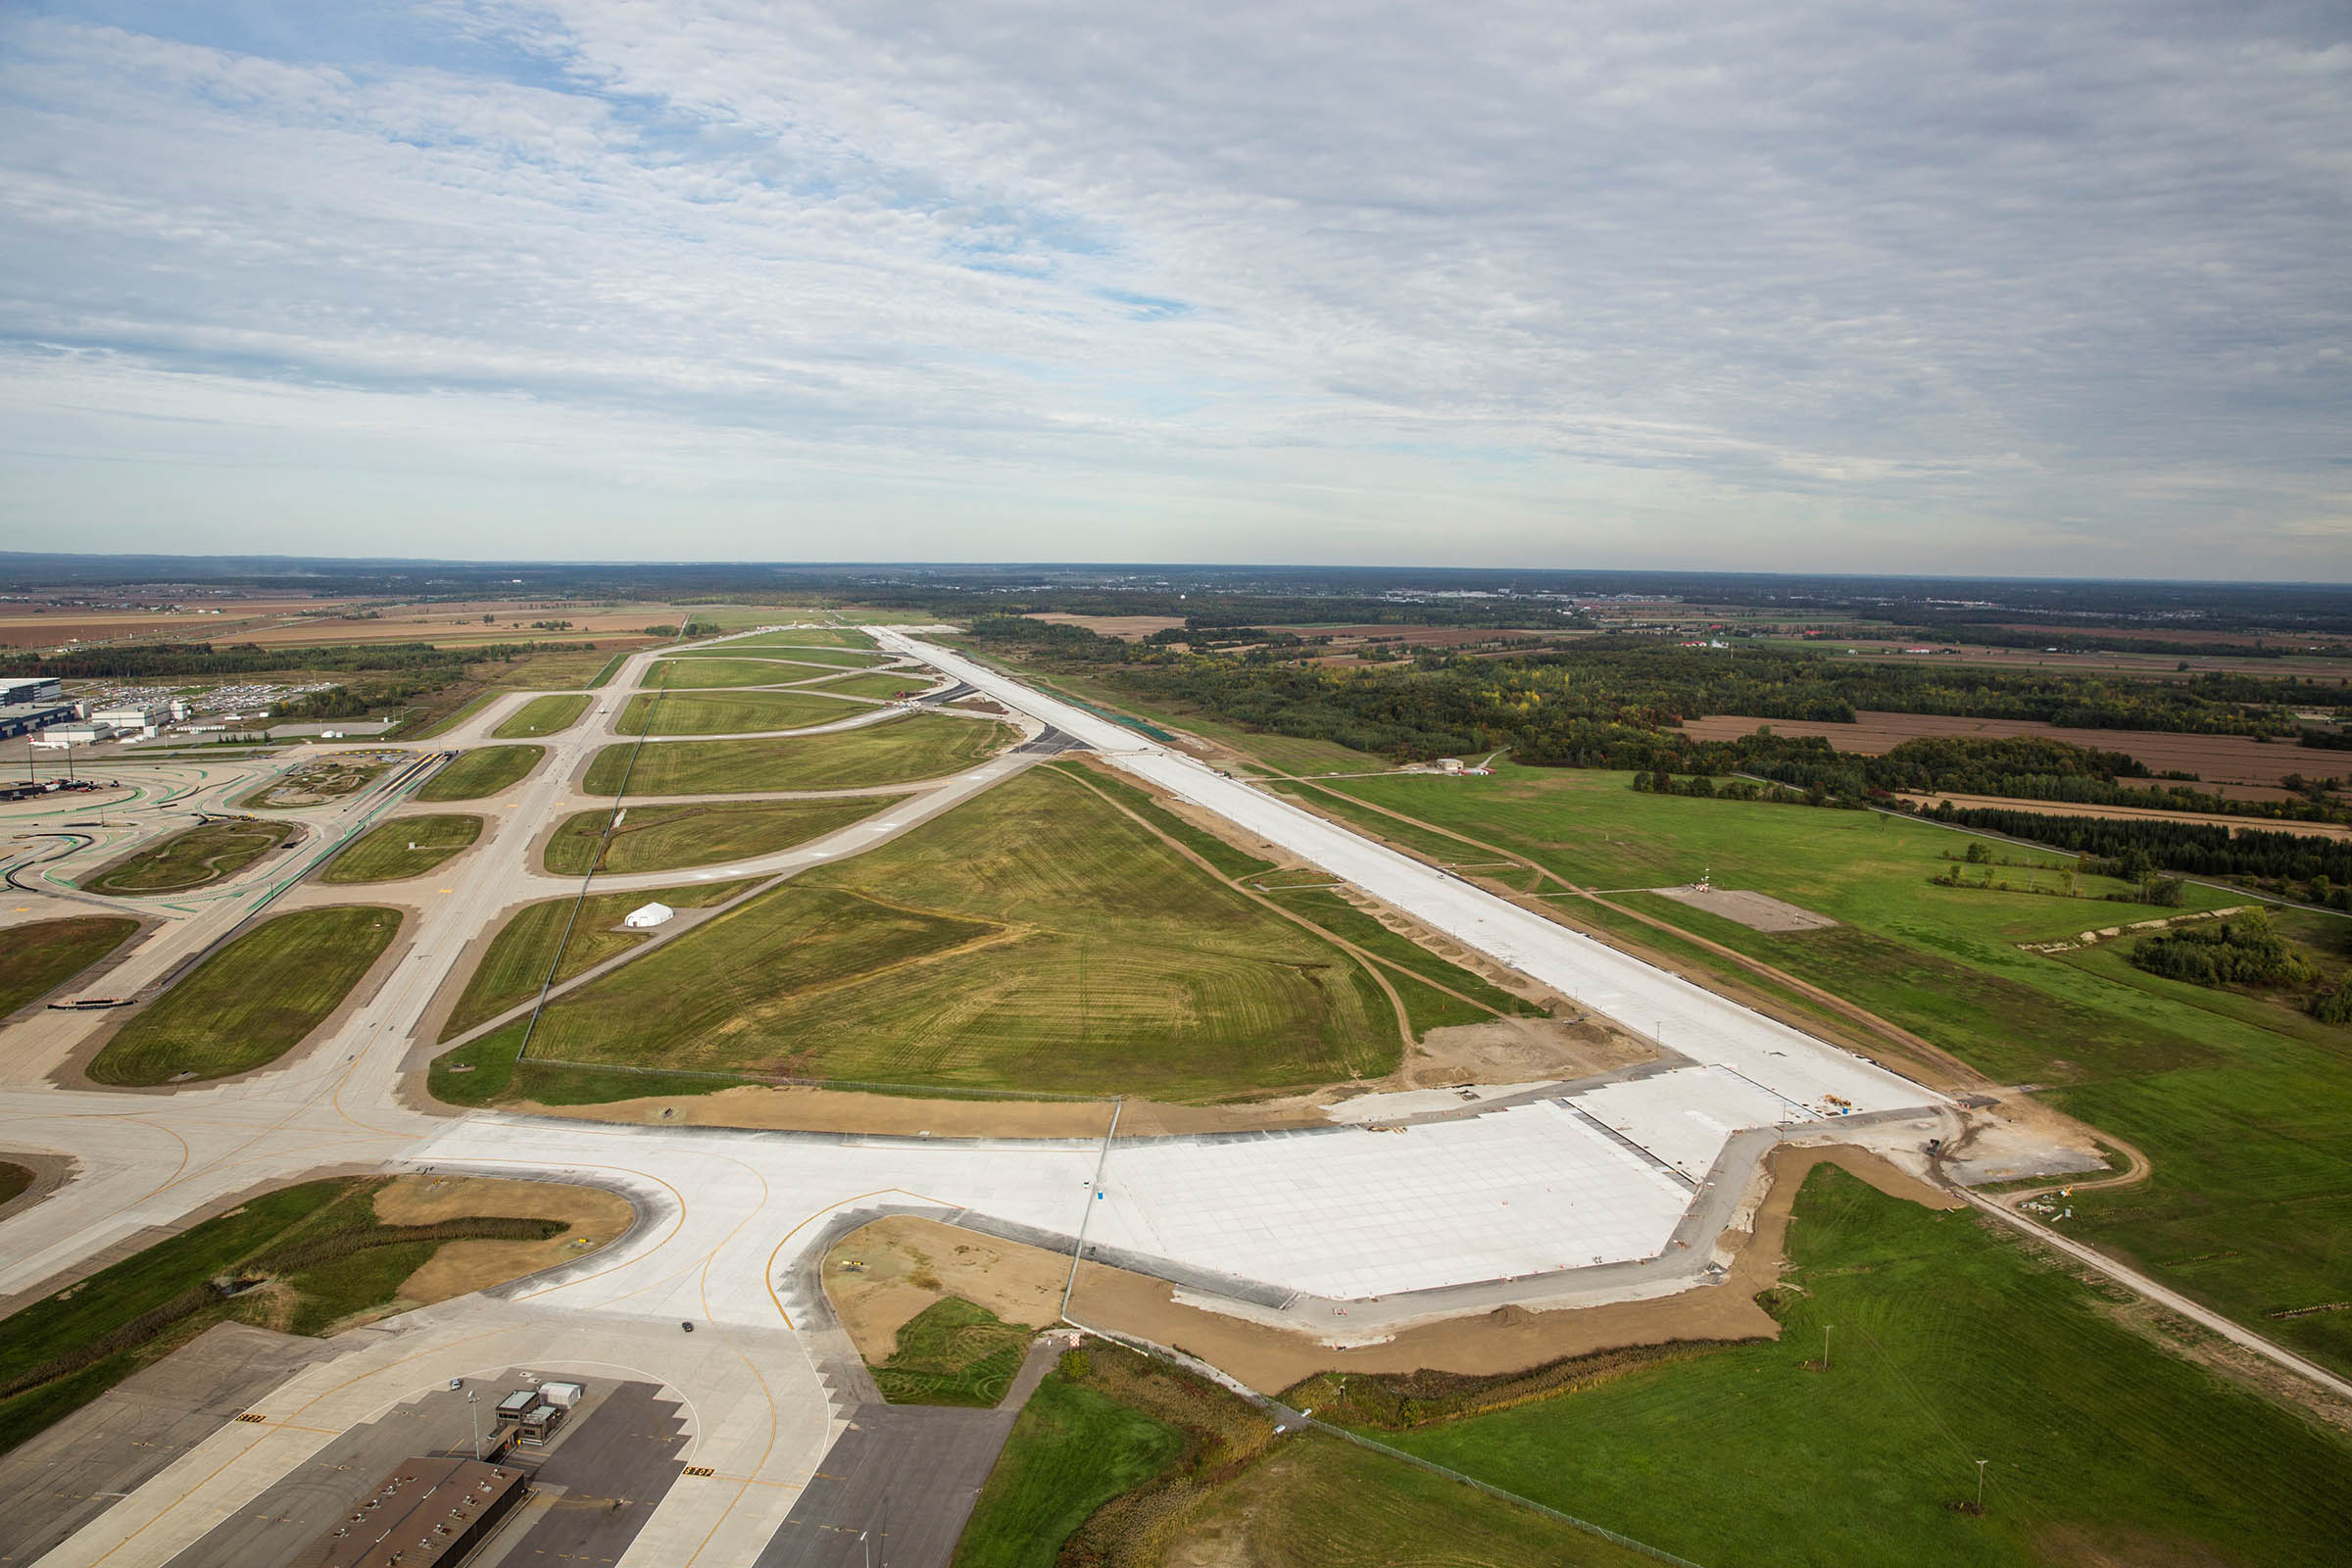 Réhabilitation de piste : une solution hybride pour assurer la rentabilité des aéroports 